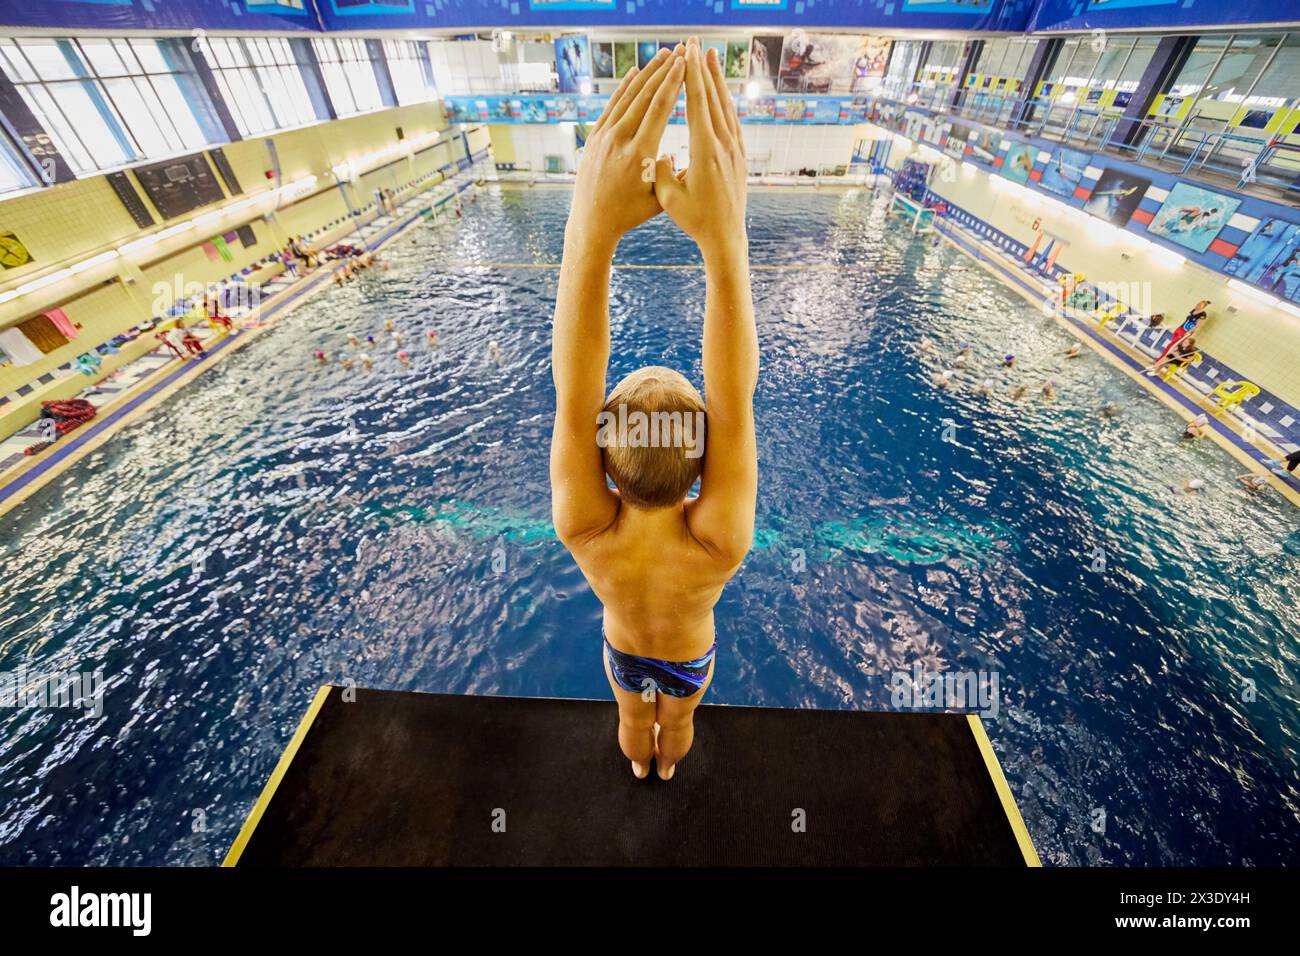 MOSCOU, RUSSIE - 15 septembre 2017 : Garçon debout sur la tour de plongée dans le complexe sportif et de divertissement universel Izmailovo. Piscine comprend piscine, enfant Banque D'Images